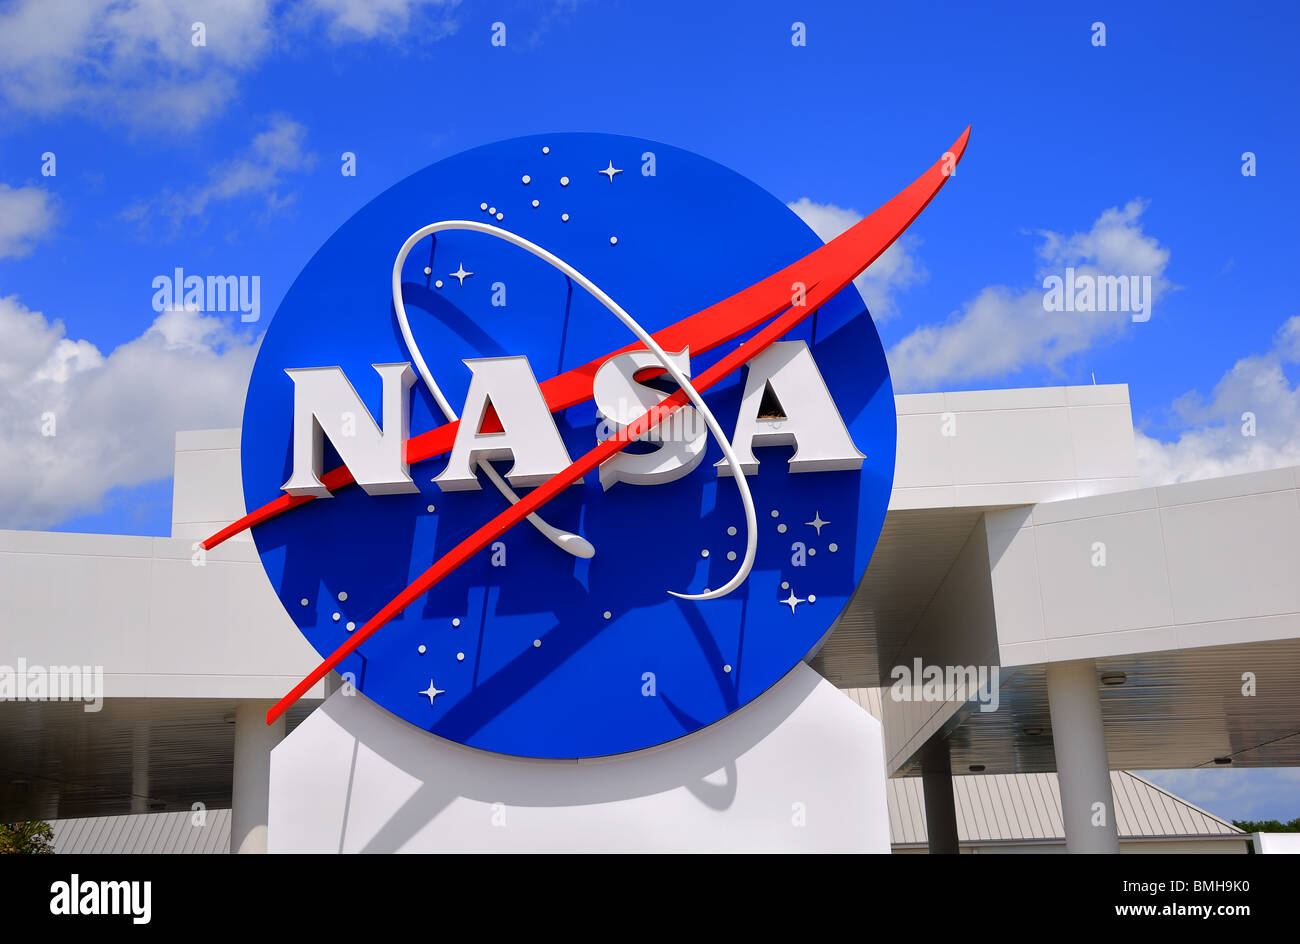 Cartello d'ingresso al Kennedy Space Center Visitor Center di Cape Canaveral, in Florida, Stati Uniti d'America Foto Stock